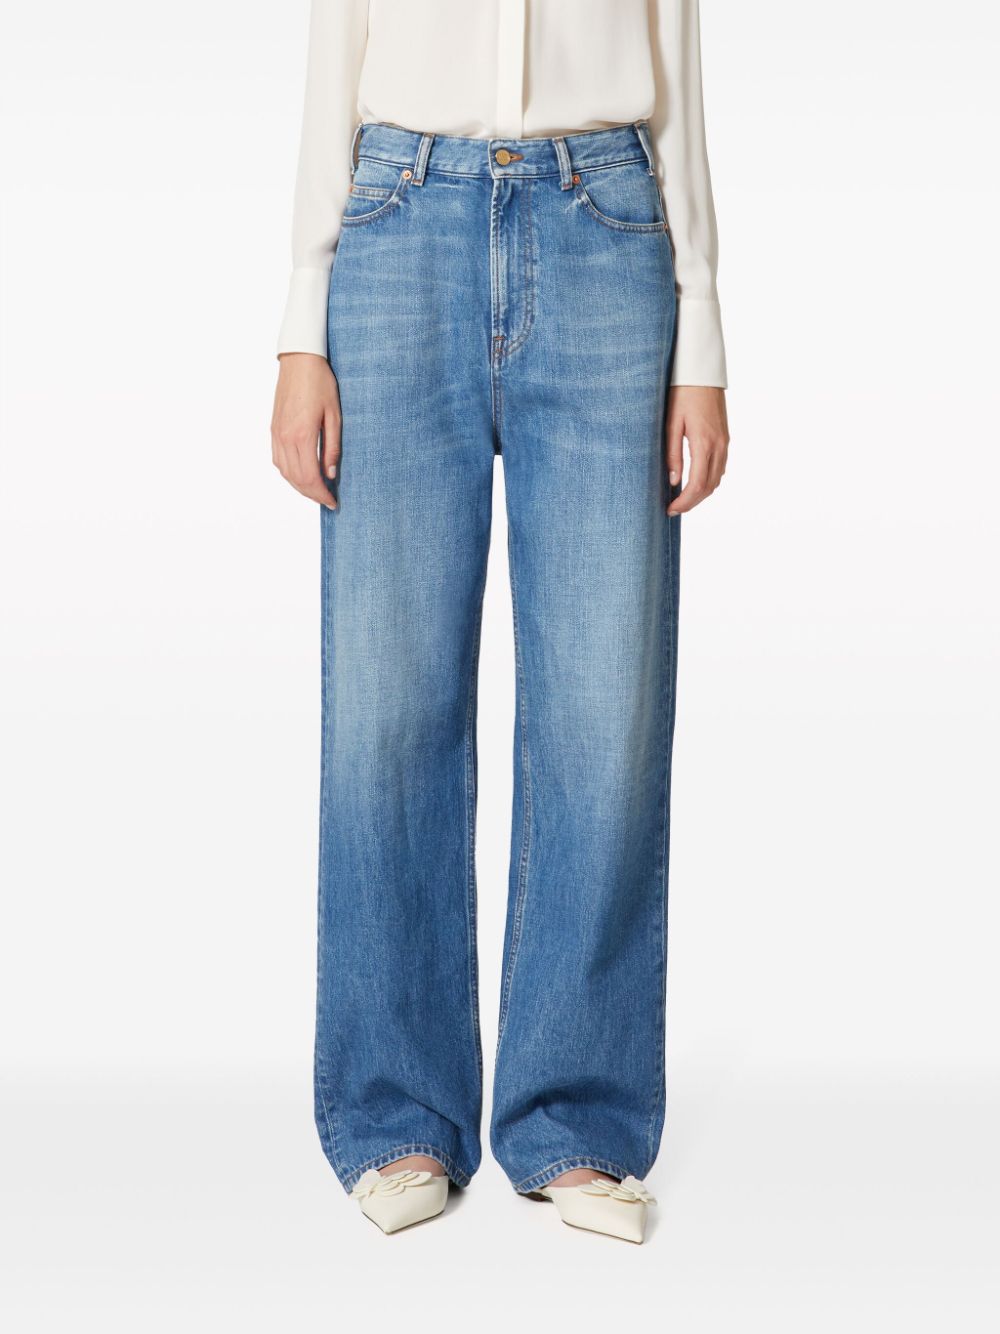 Quần jeans dài màu xanh nhạt với chi tiết chữ V